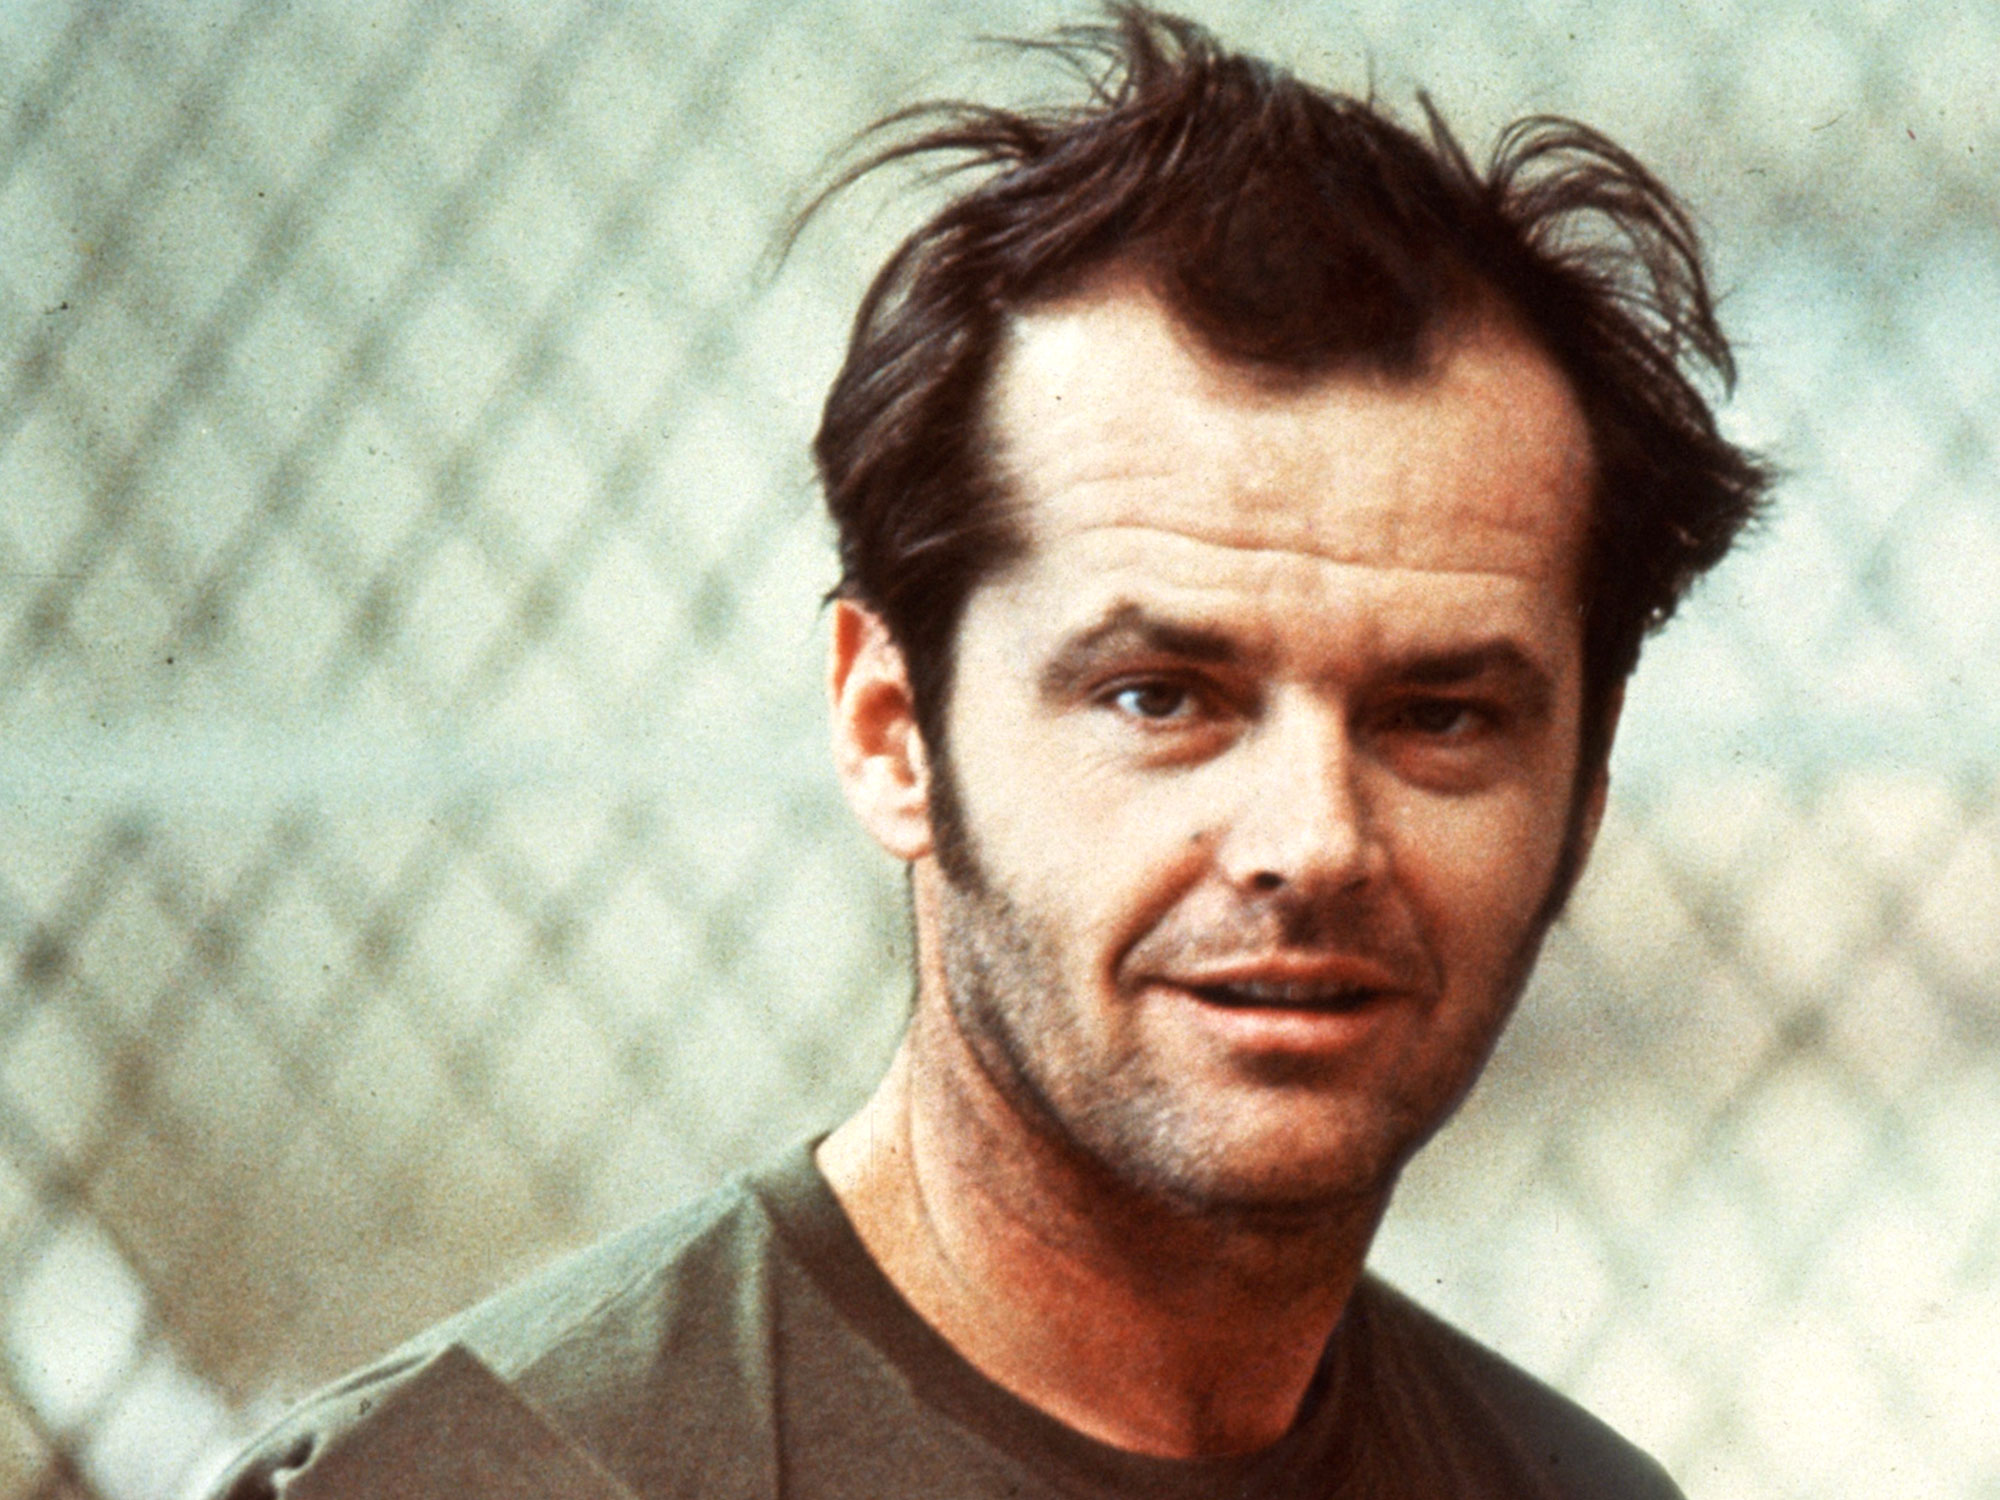 Jack Nicholson hieman pöllämystynen ilme kasvoillaan, elokuvasta Yksi lensi yli käenpesän.